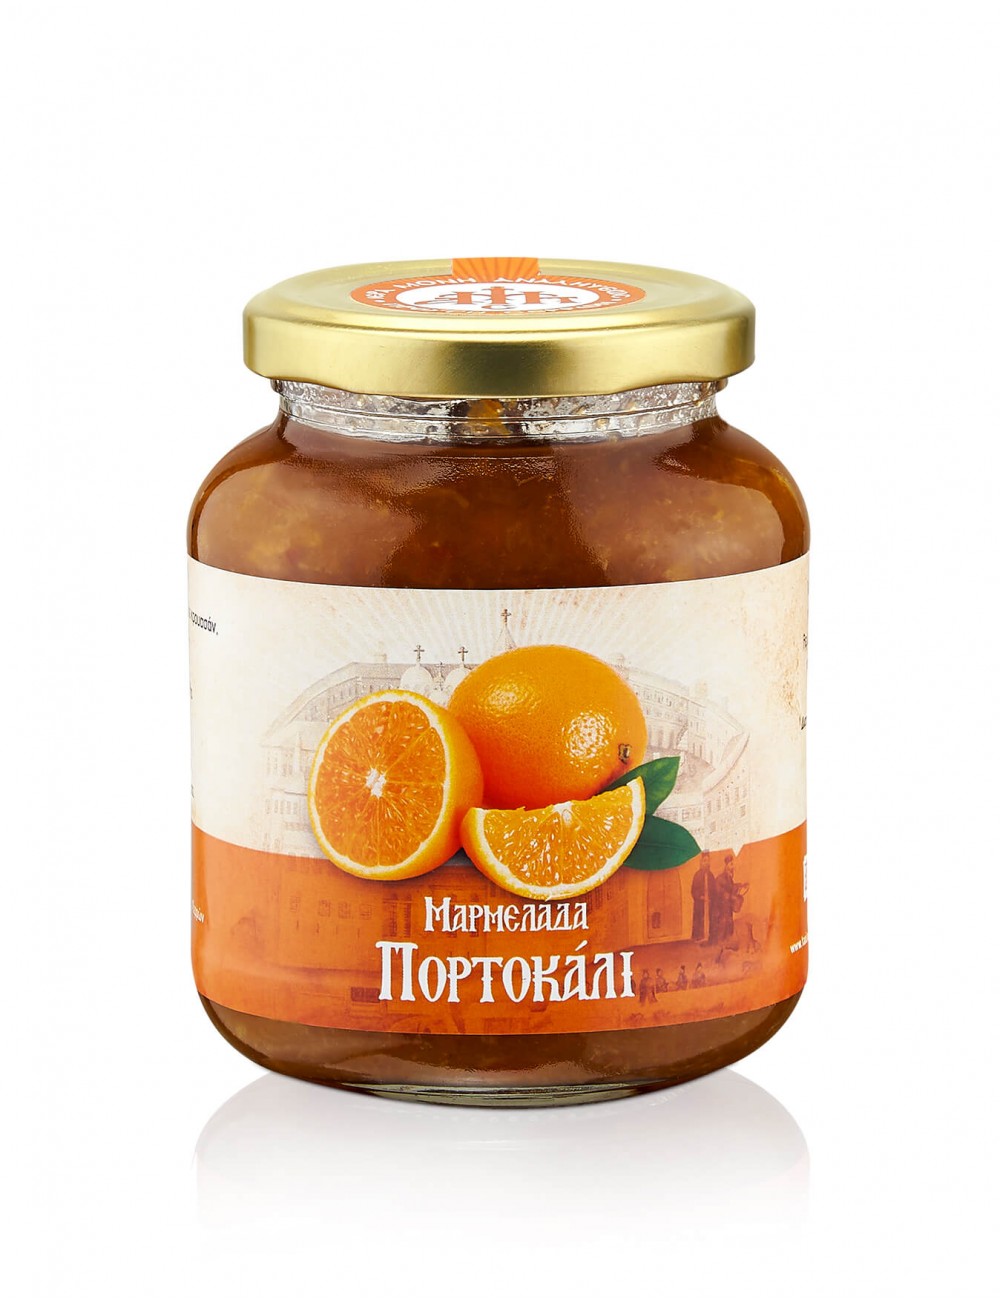 Γλυκό του κουταλιού Πορτοκάλι | Ι.Μ. Αναλήψεως